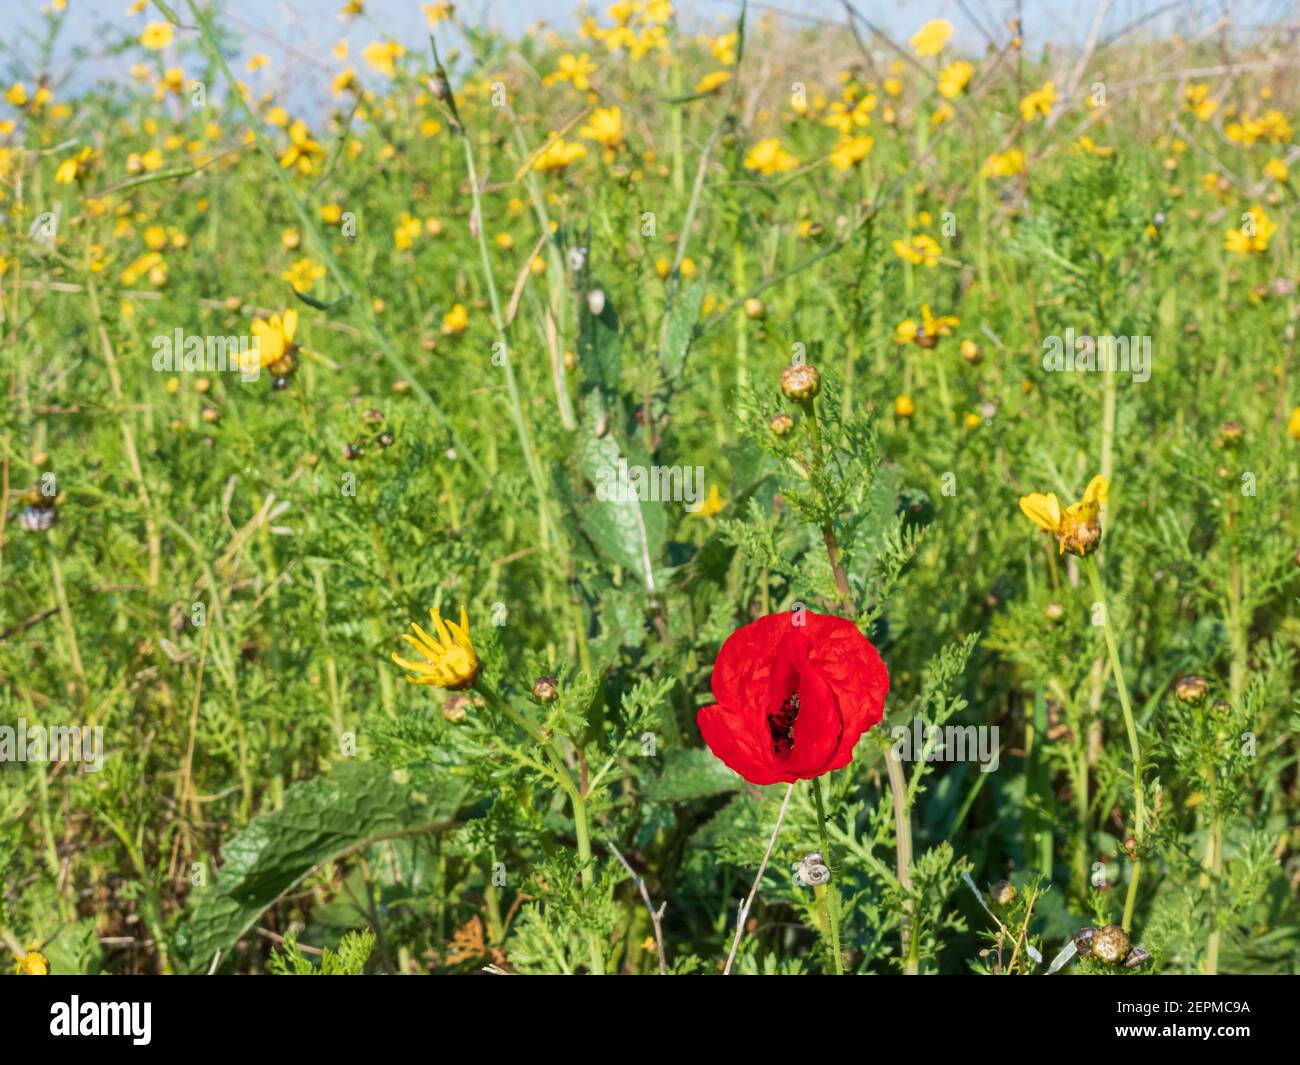 Flor de amapola roja de cerca sobre un fondo de amarillo flores y hierba verde Foto de stock